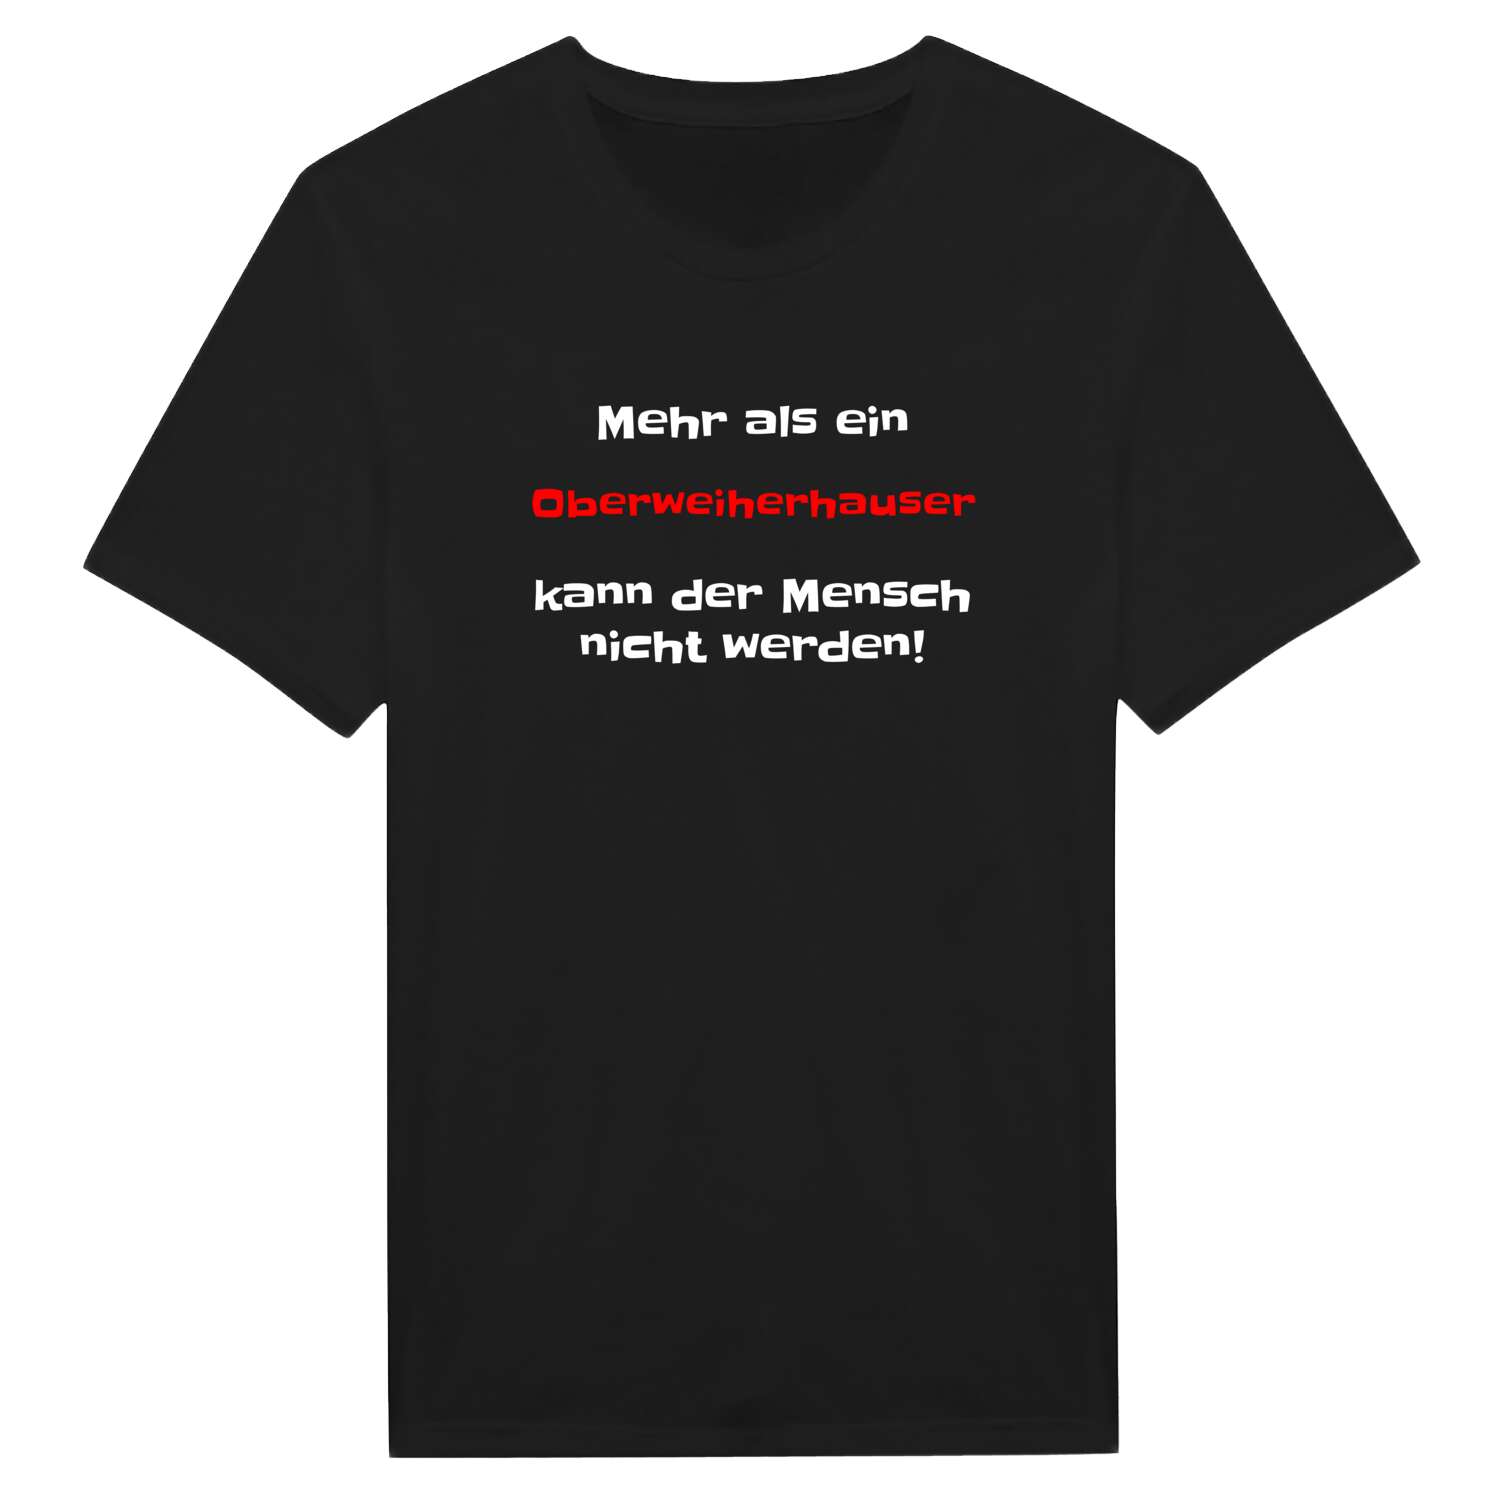 Oberweiherhaus T-Shirt »Mehr als ein«